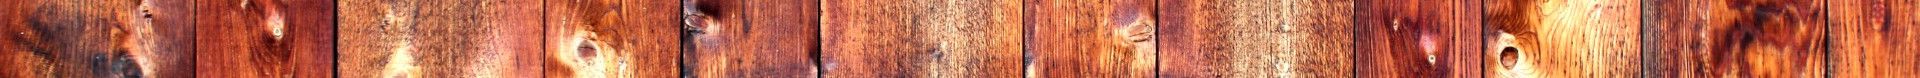 Rustic Wood by Kelm 3